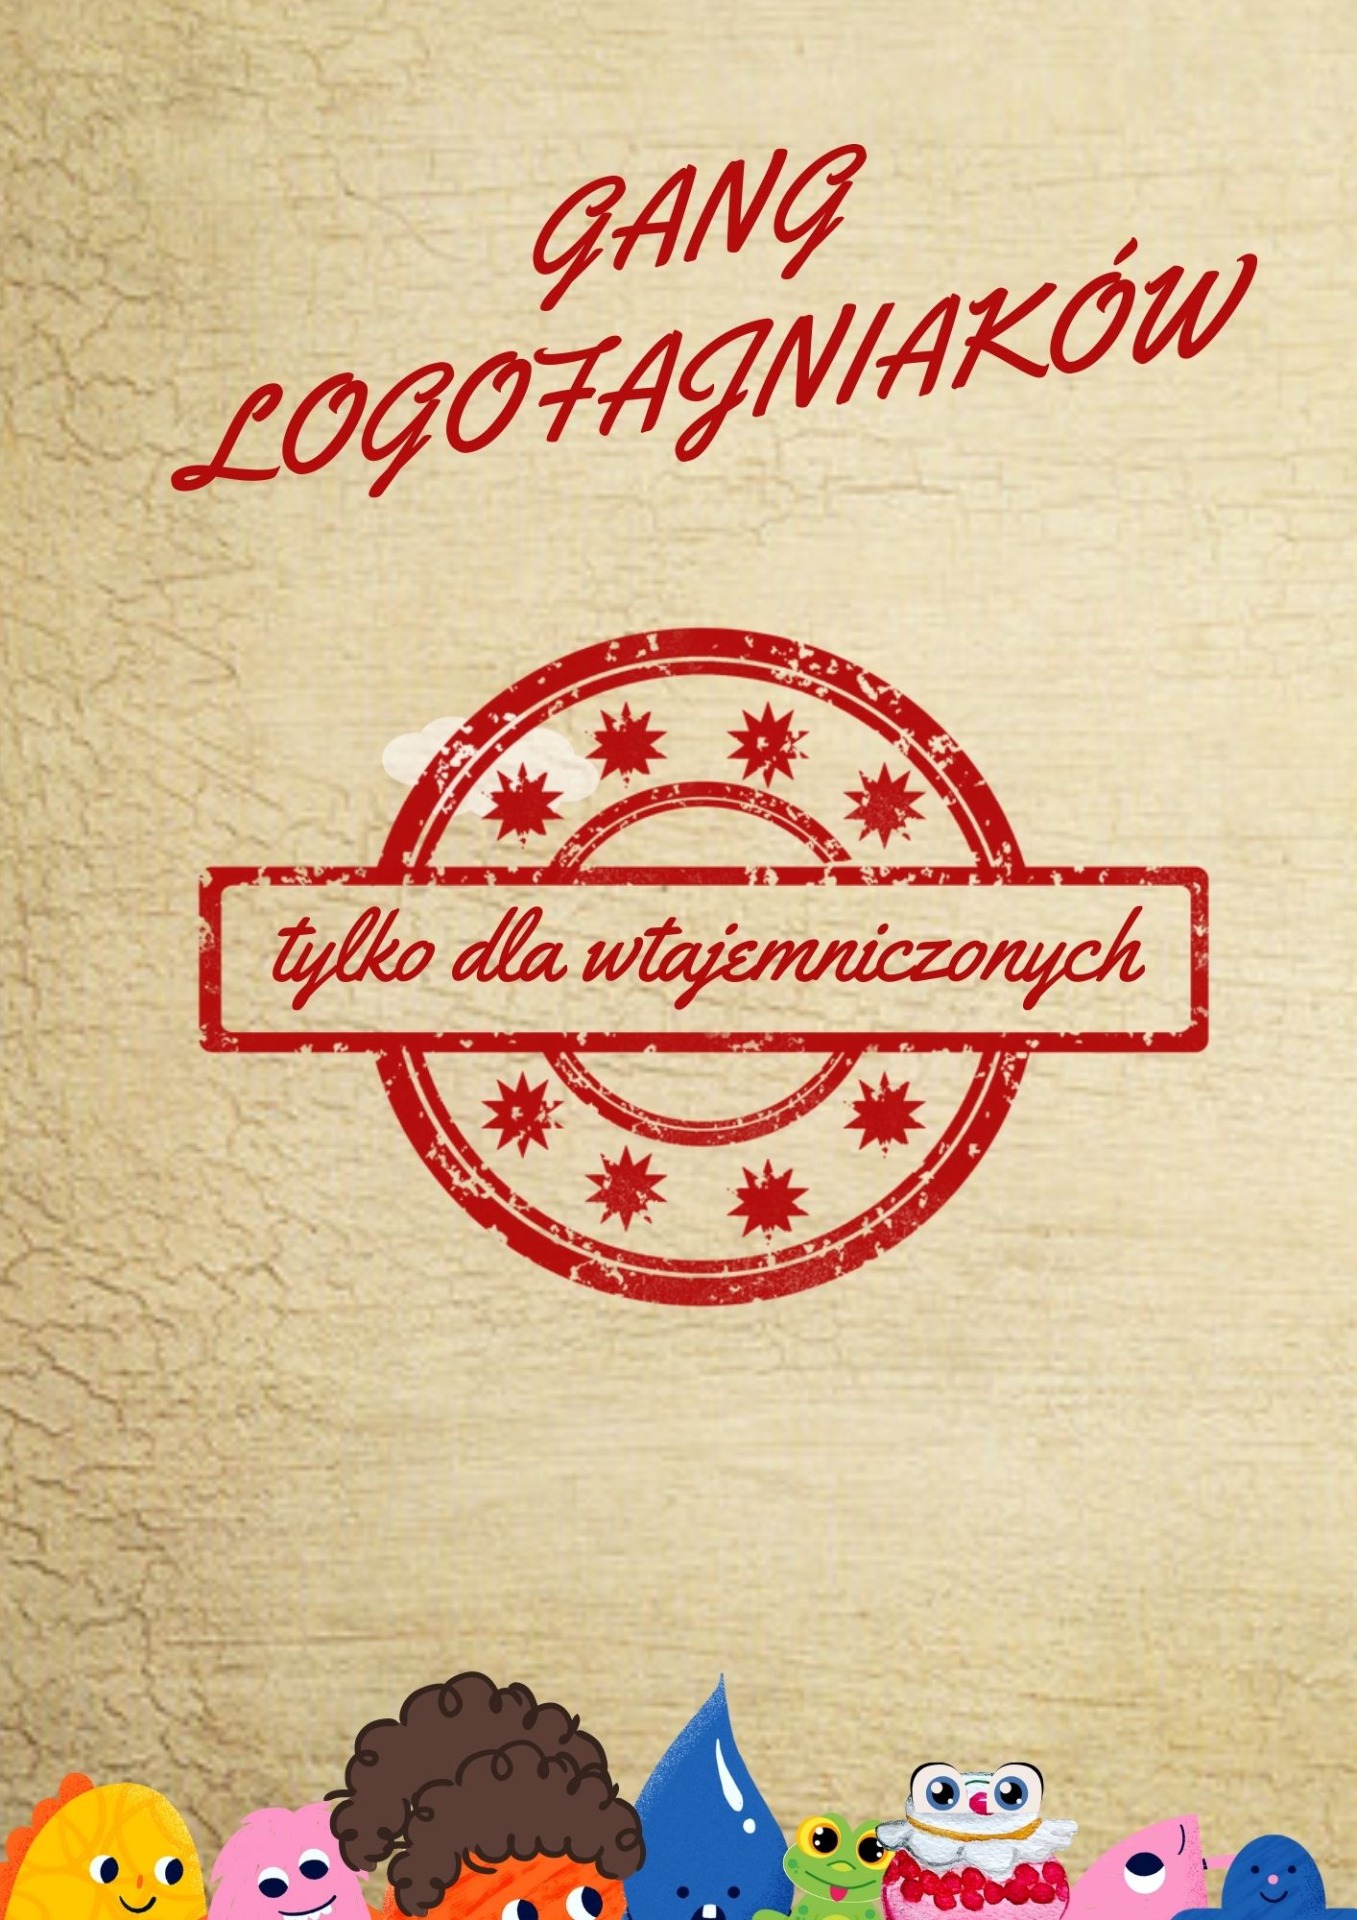 Gang Logofajniaków - Obrazek 1